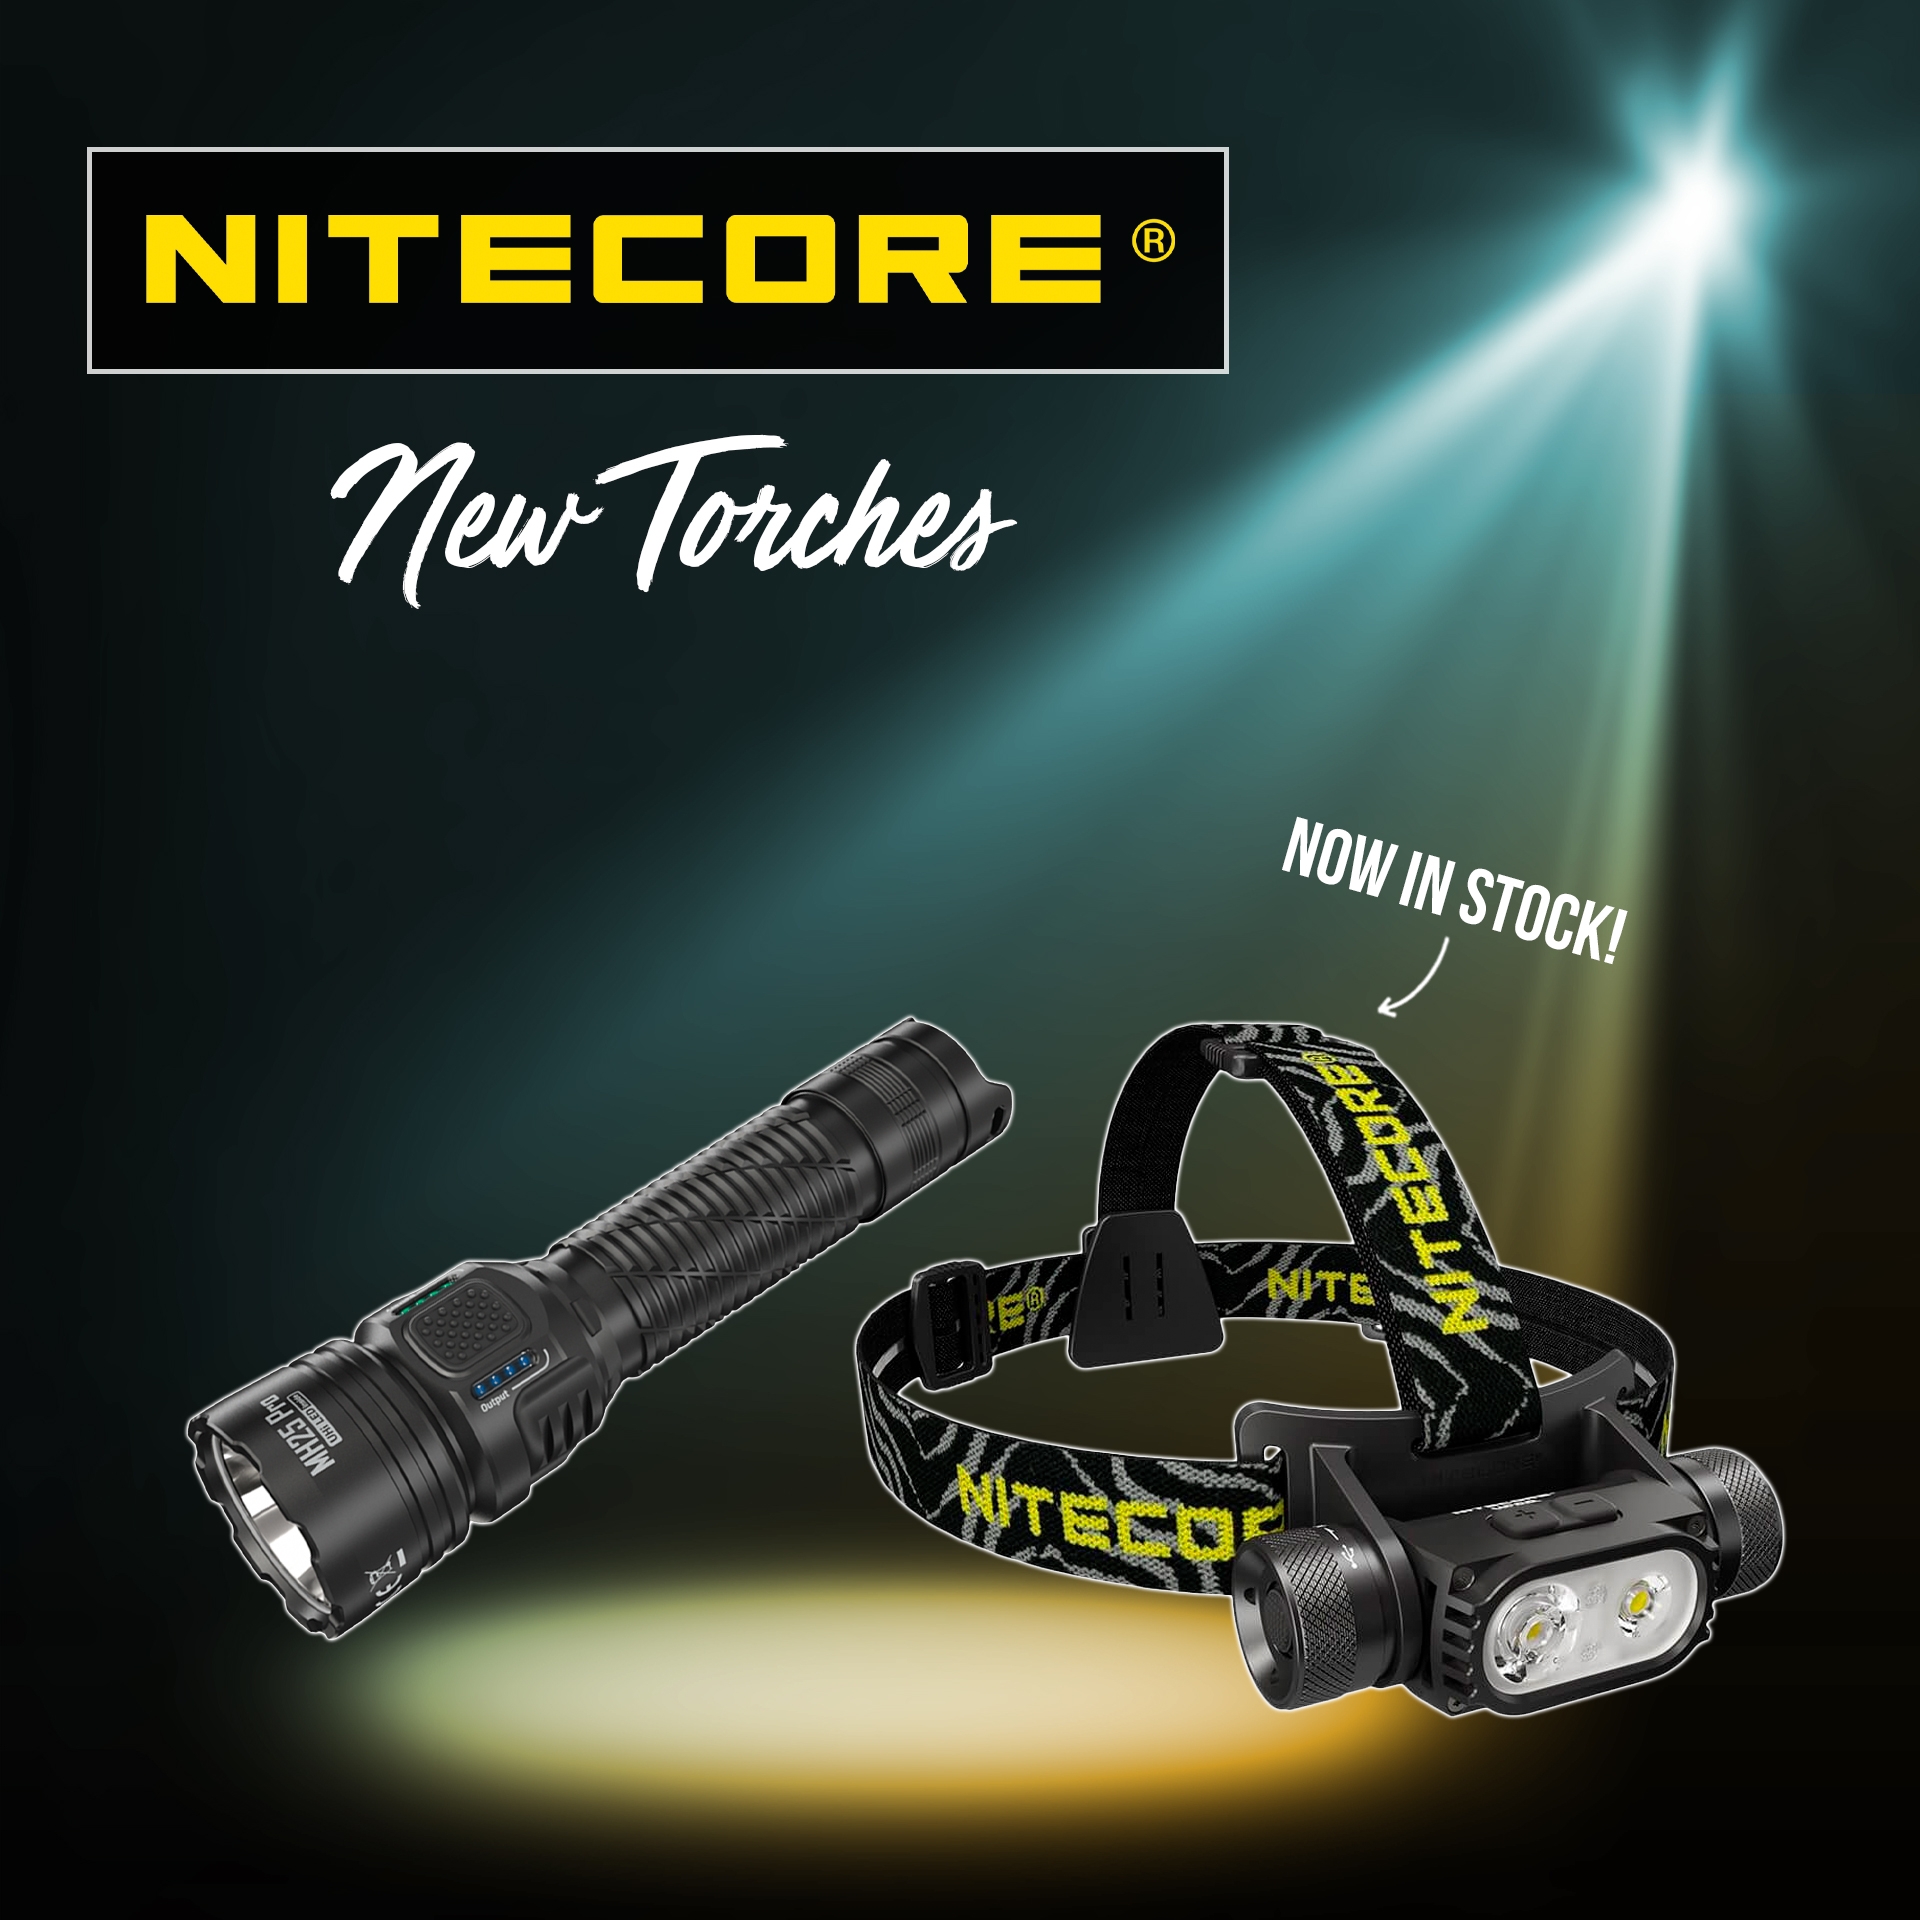 New - Nitecore Torches